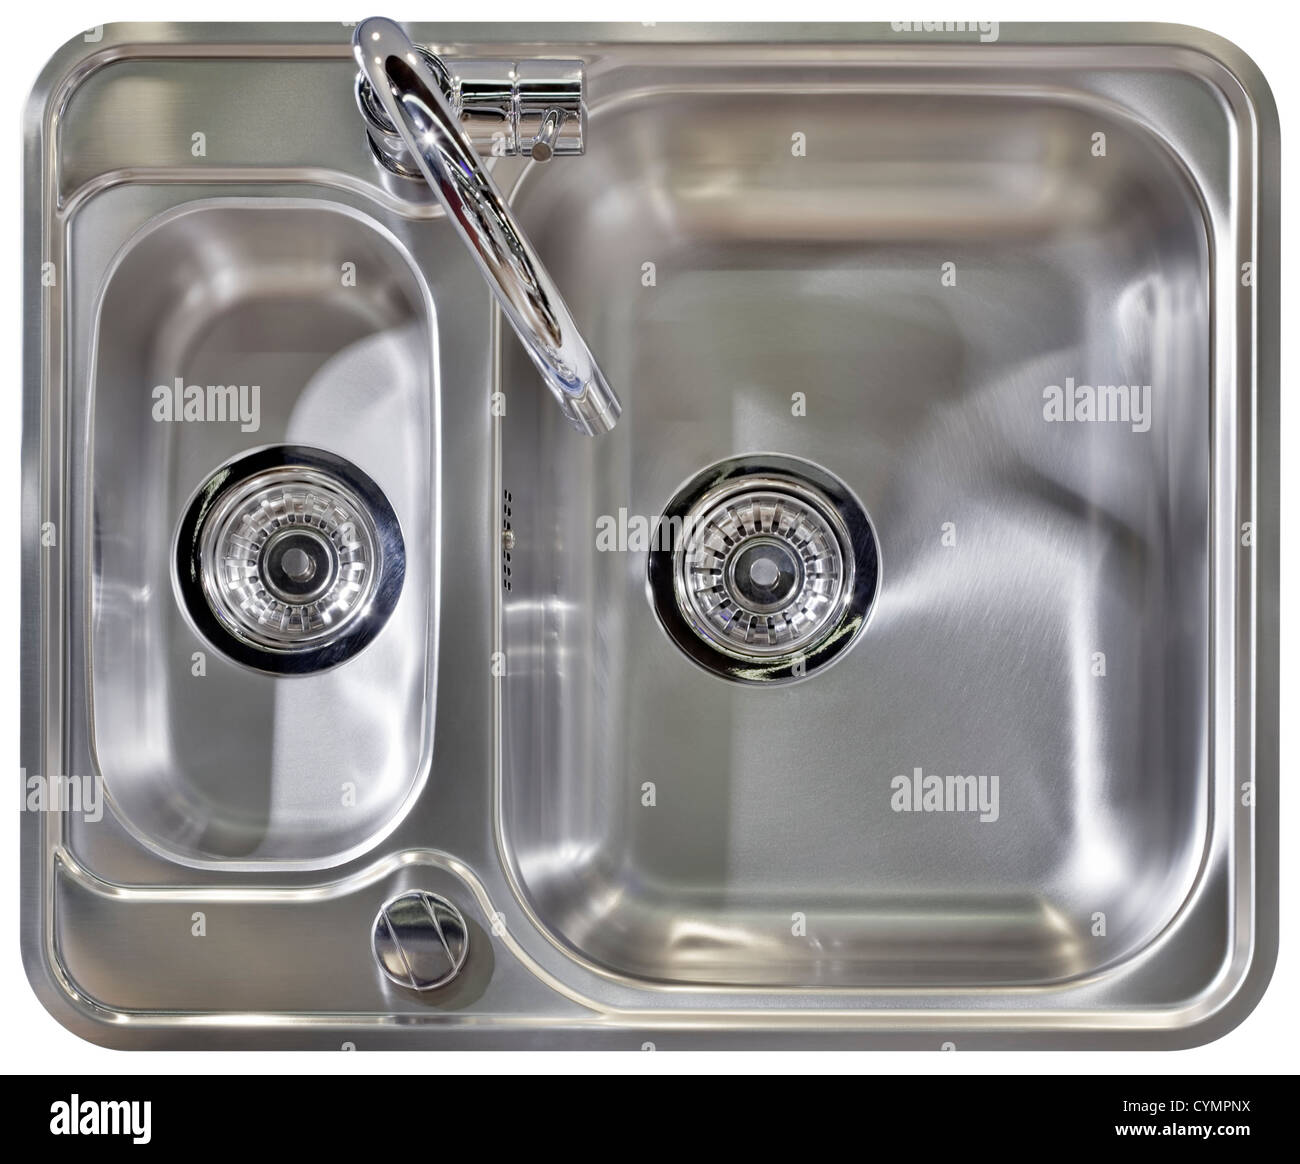 Edelstahl Wasserhahn und waschen sinkt isoliert mit Clipping-Pfad Stockfoto